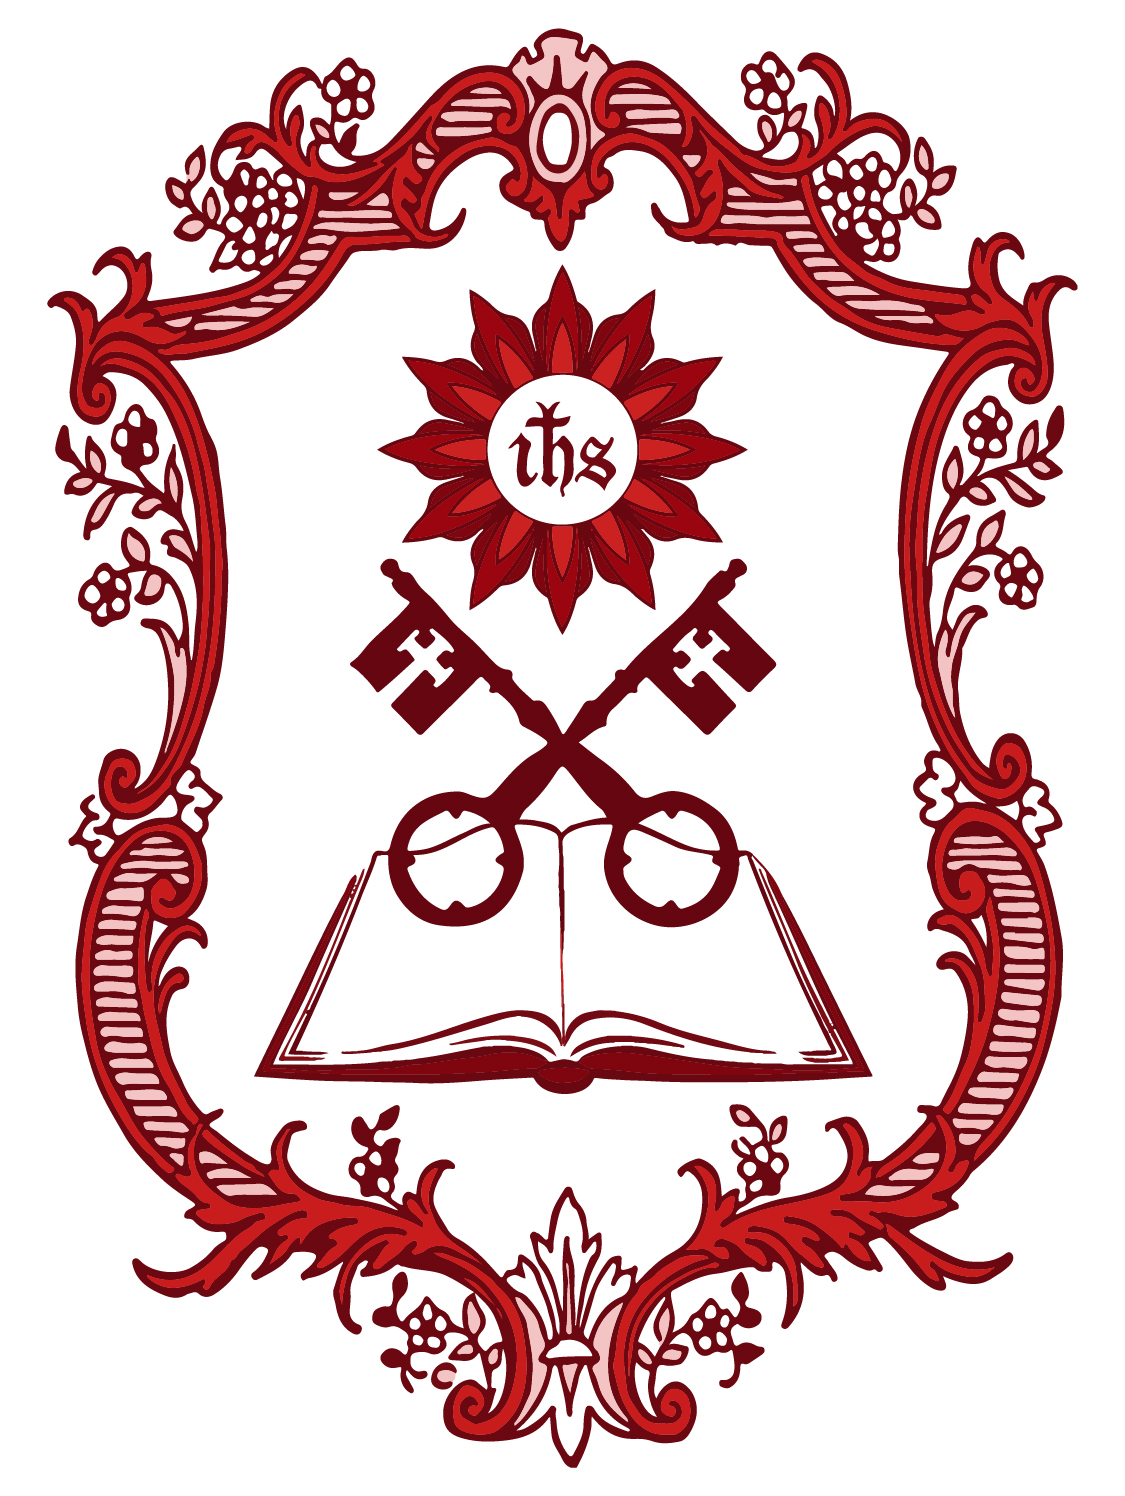 Friends of God Institute logo